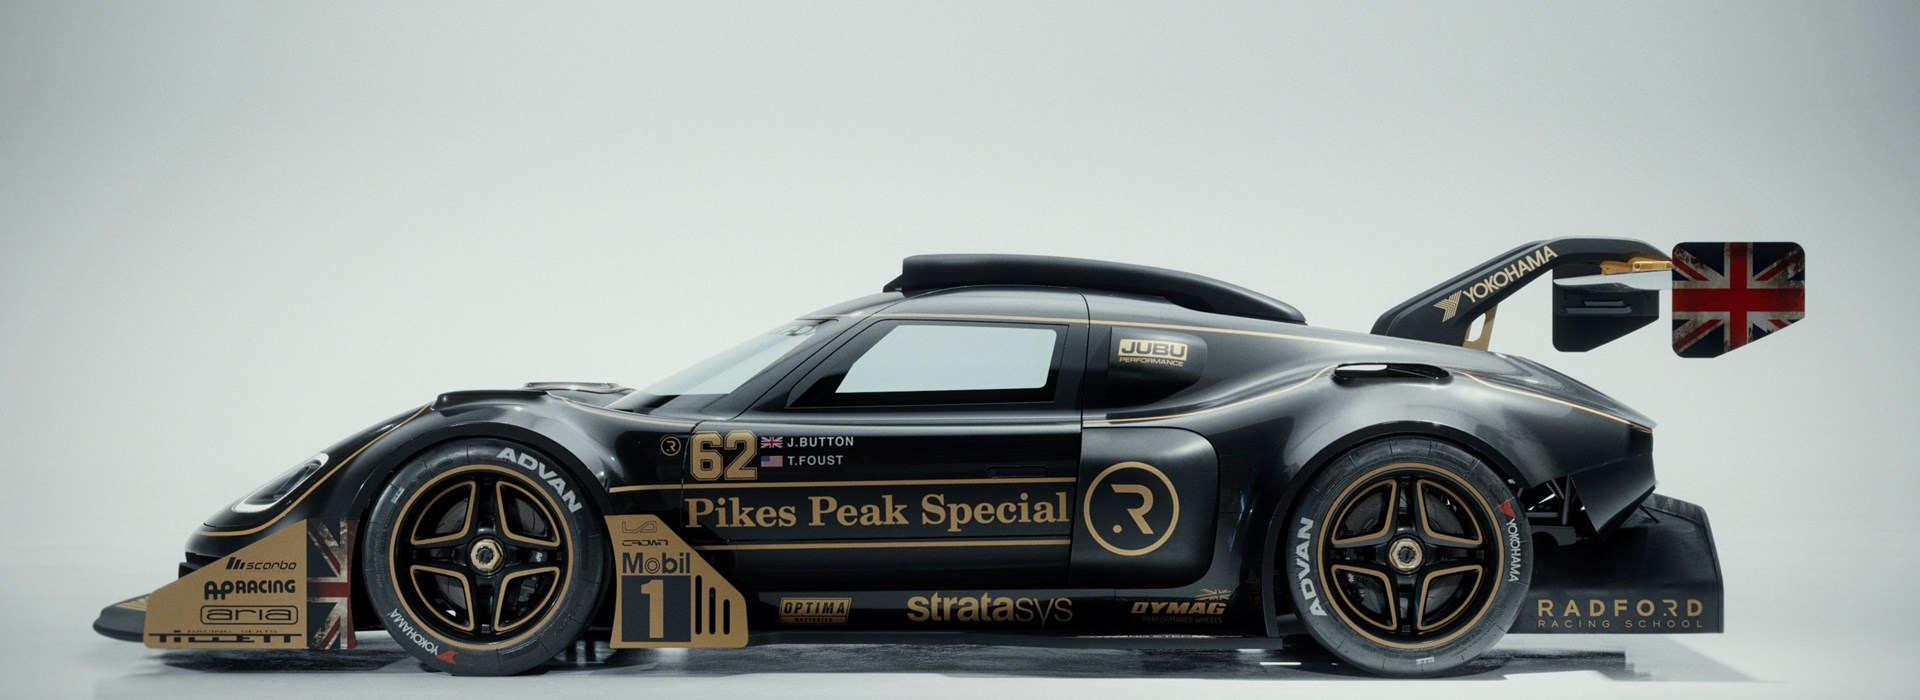 Radford Motors 3D printed racecar